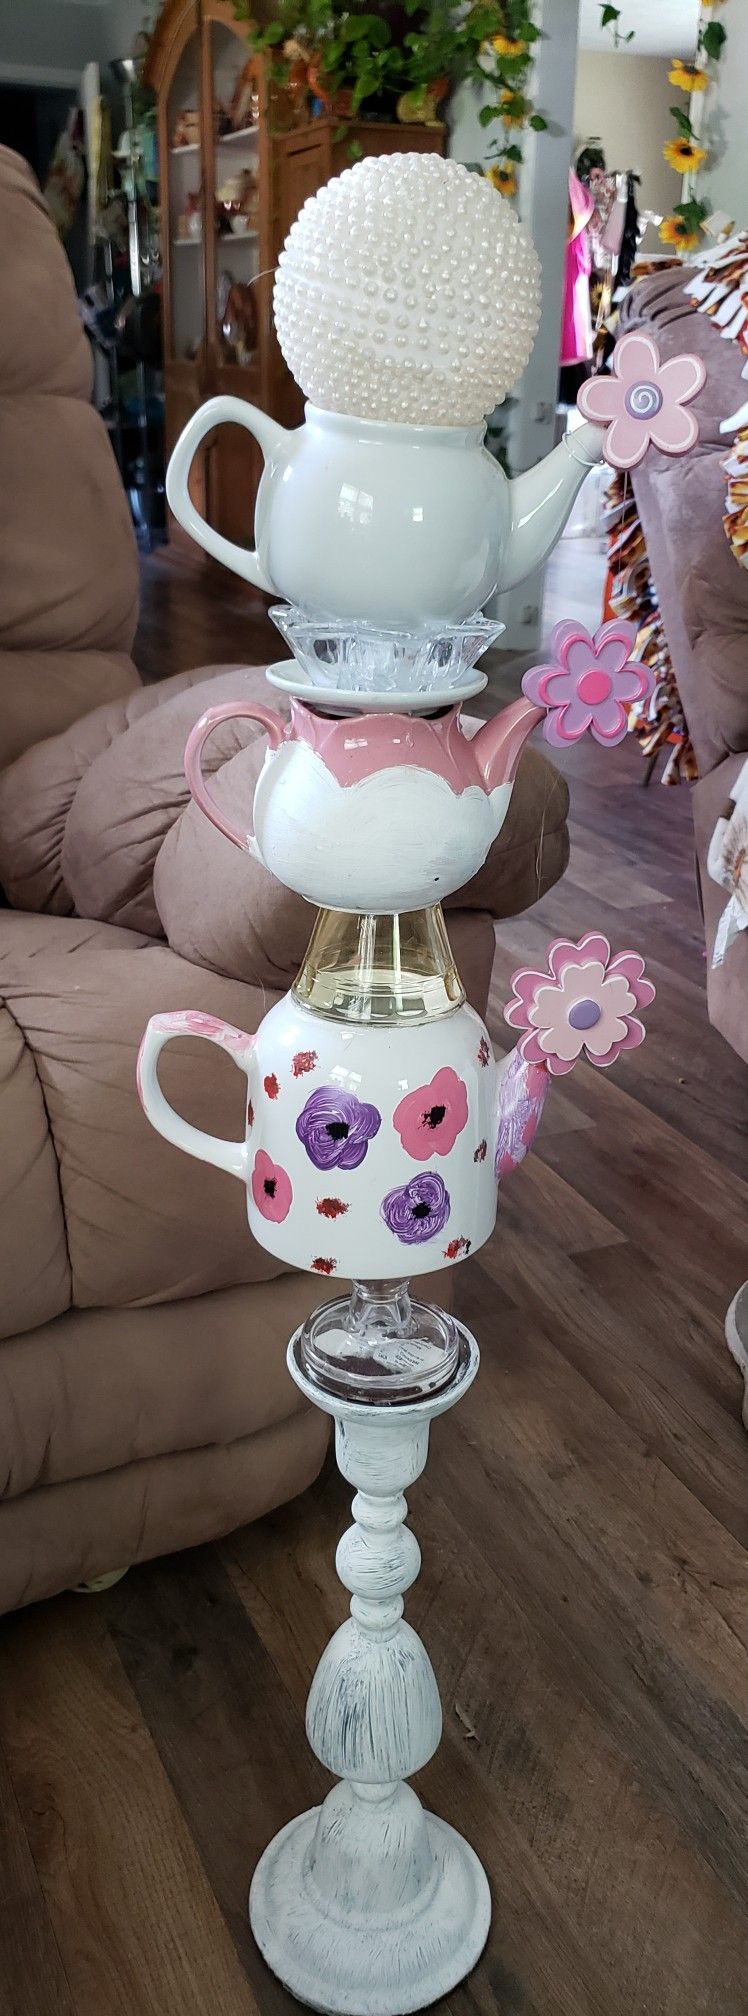 Tea Pot Flower Art